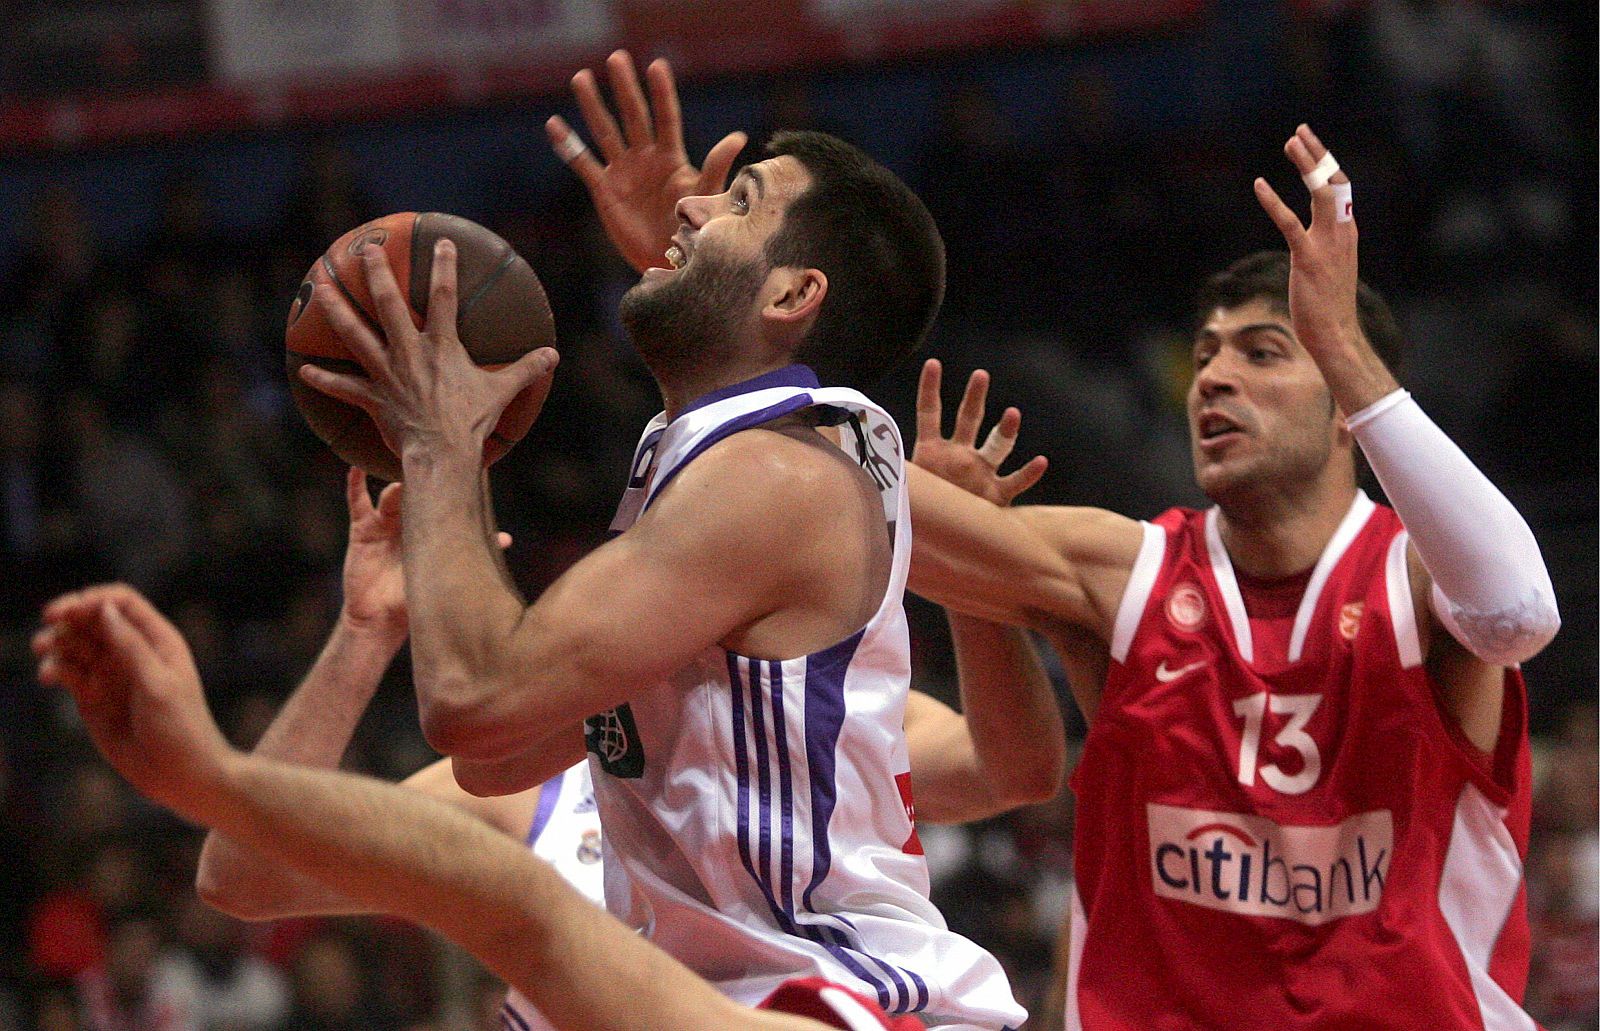 El jugador del Olympiacos Vasilopoulos pelea por el balón con el jugador del Real Madrid Felipe Reyes.